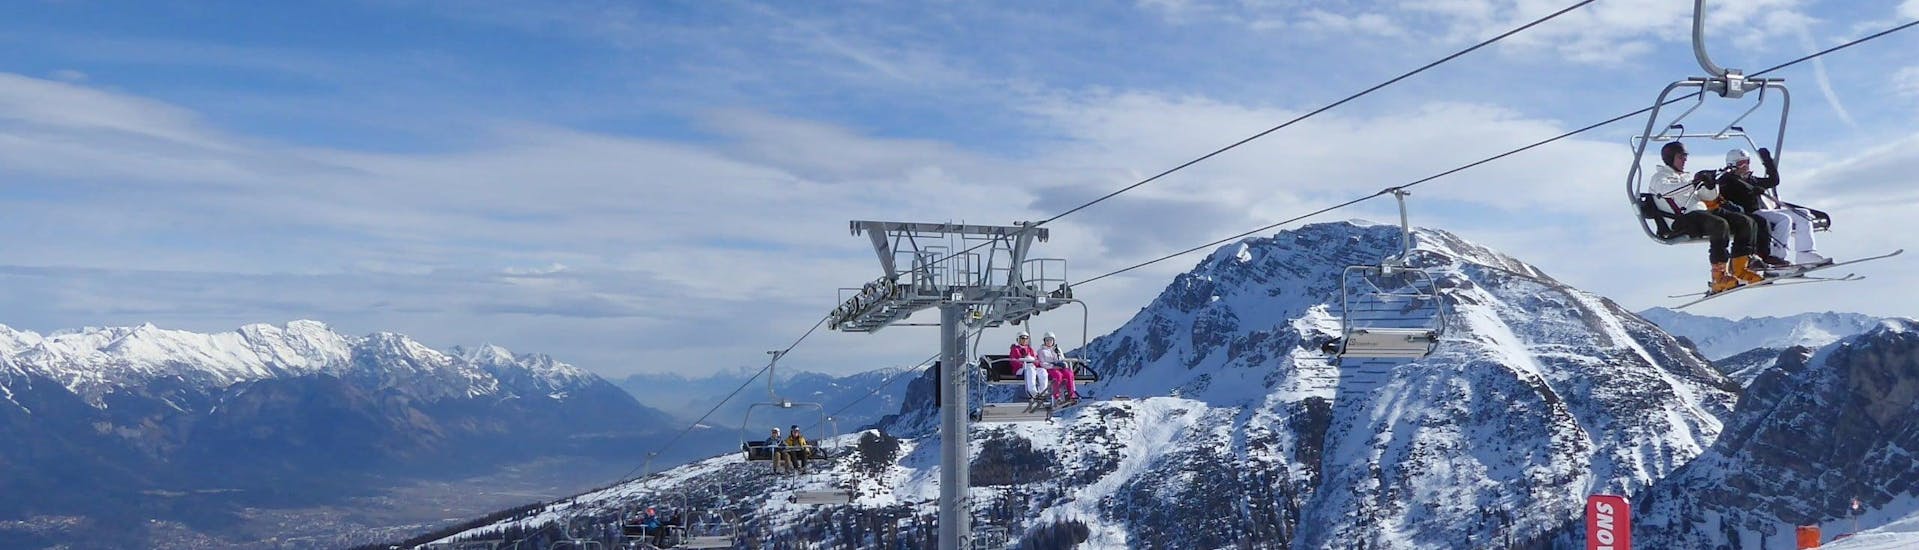 Ausblick auf die sonnige Berglandschaft beim Skifahren lernen mit den Skischulen in der Axamer Lizum.